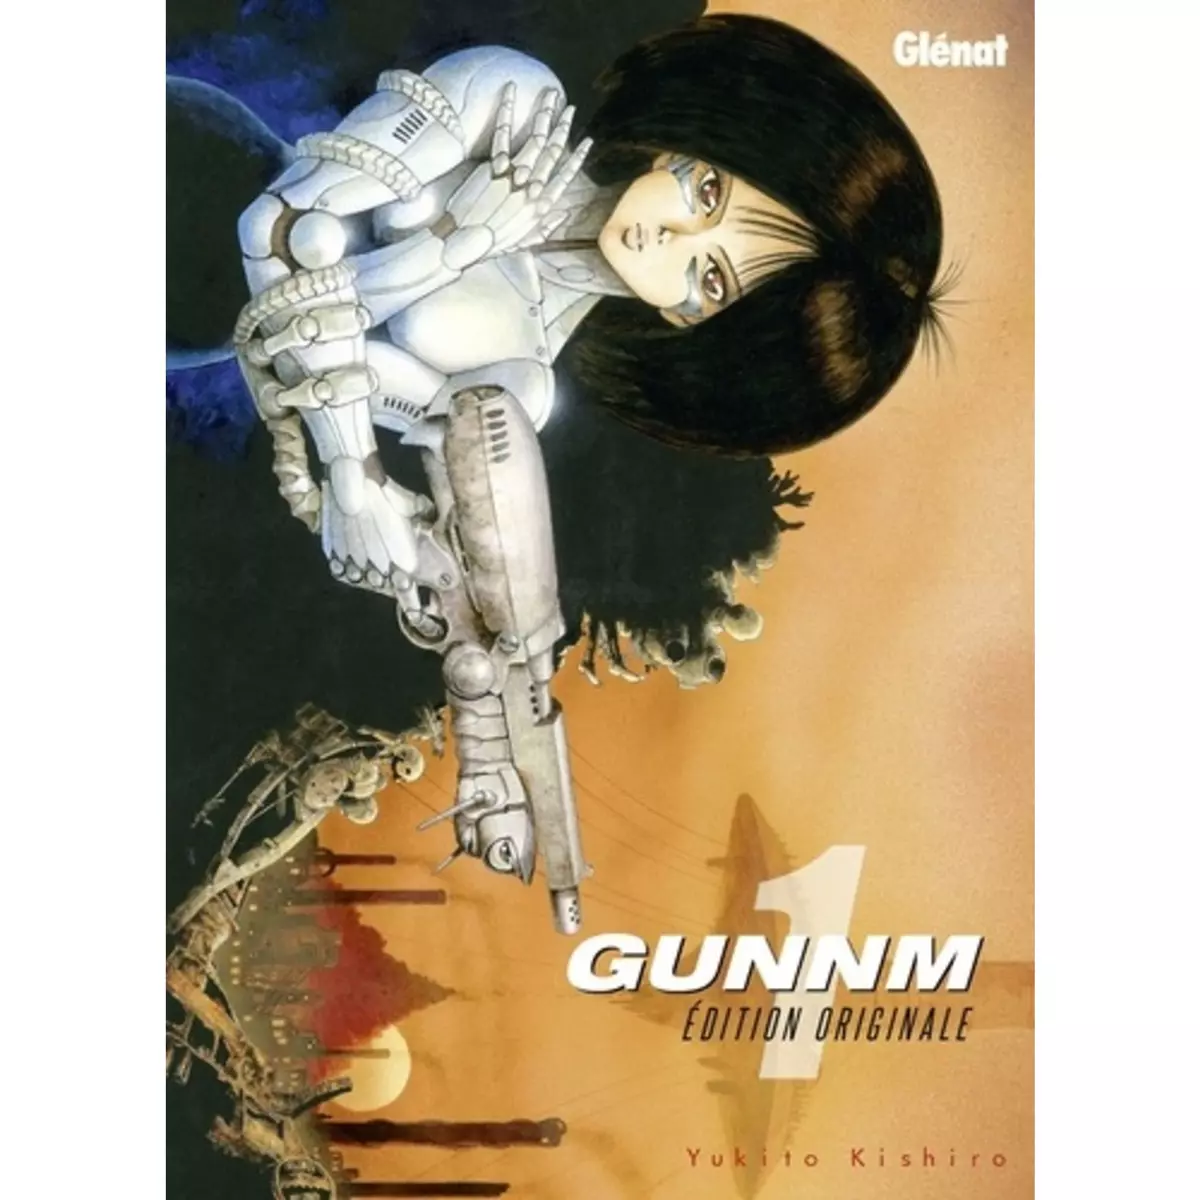  GUNNM - EDITION ORIGINALE TOME 1, Kishiro Yukito